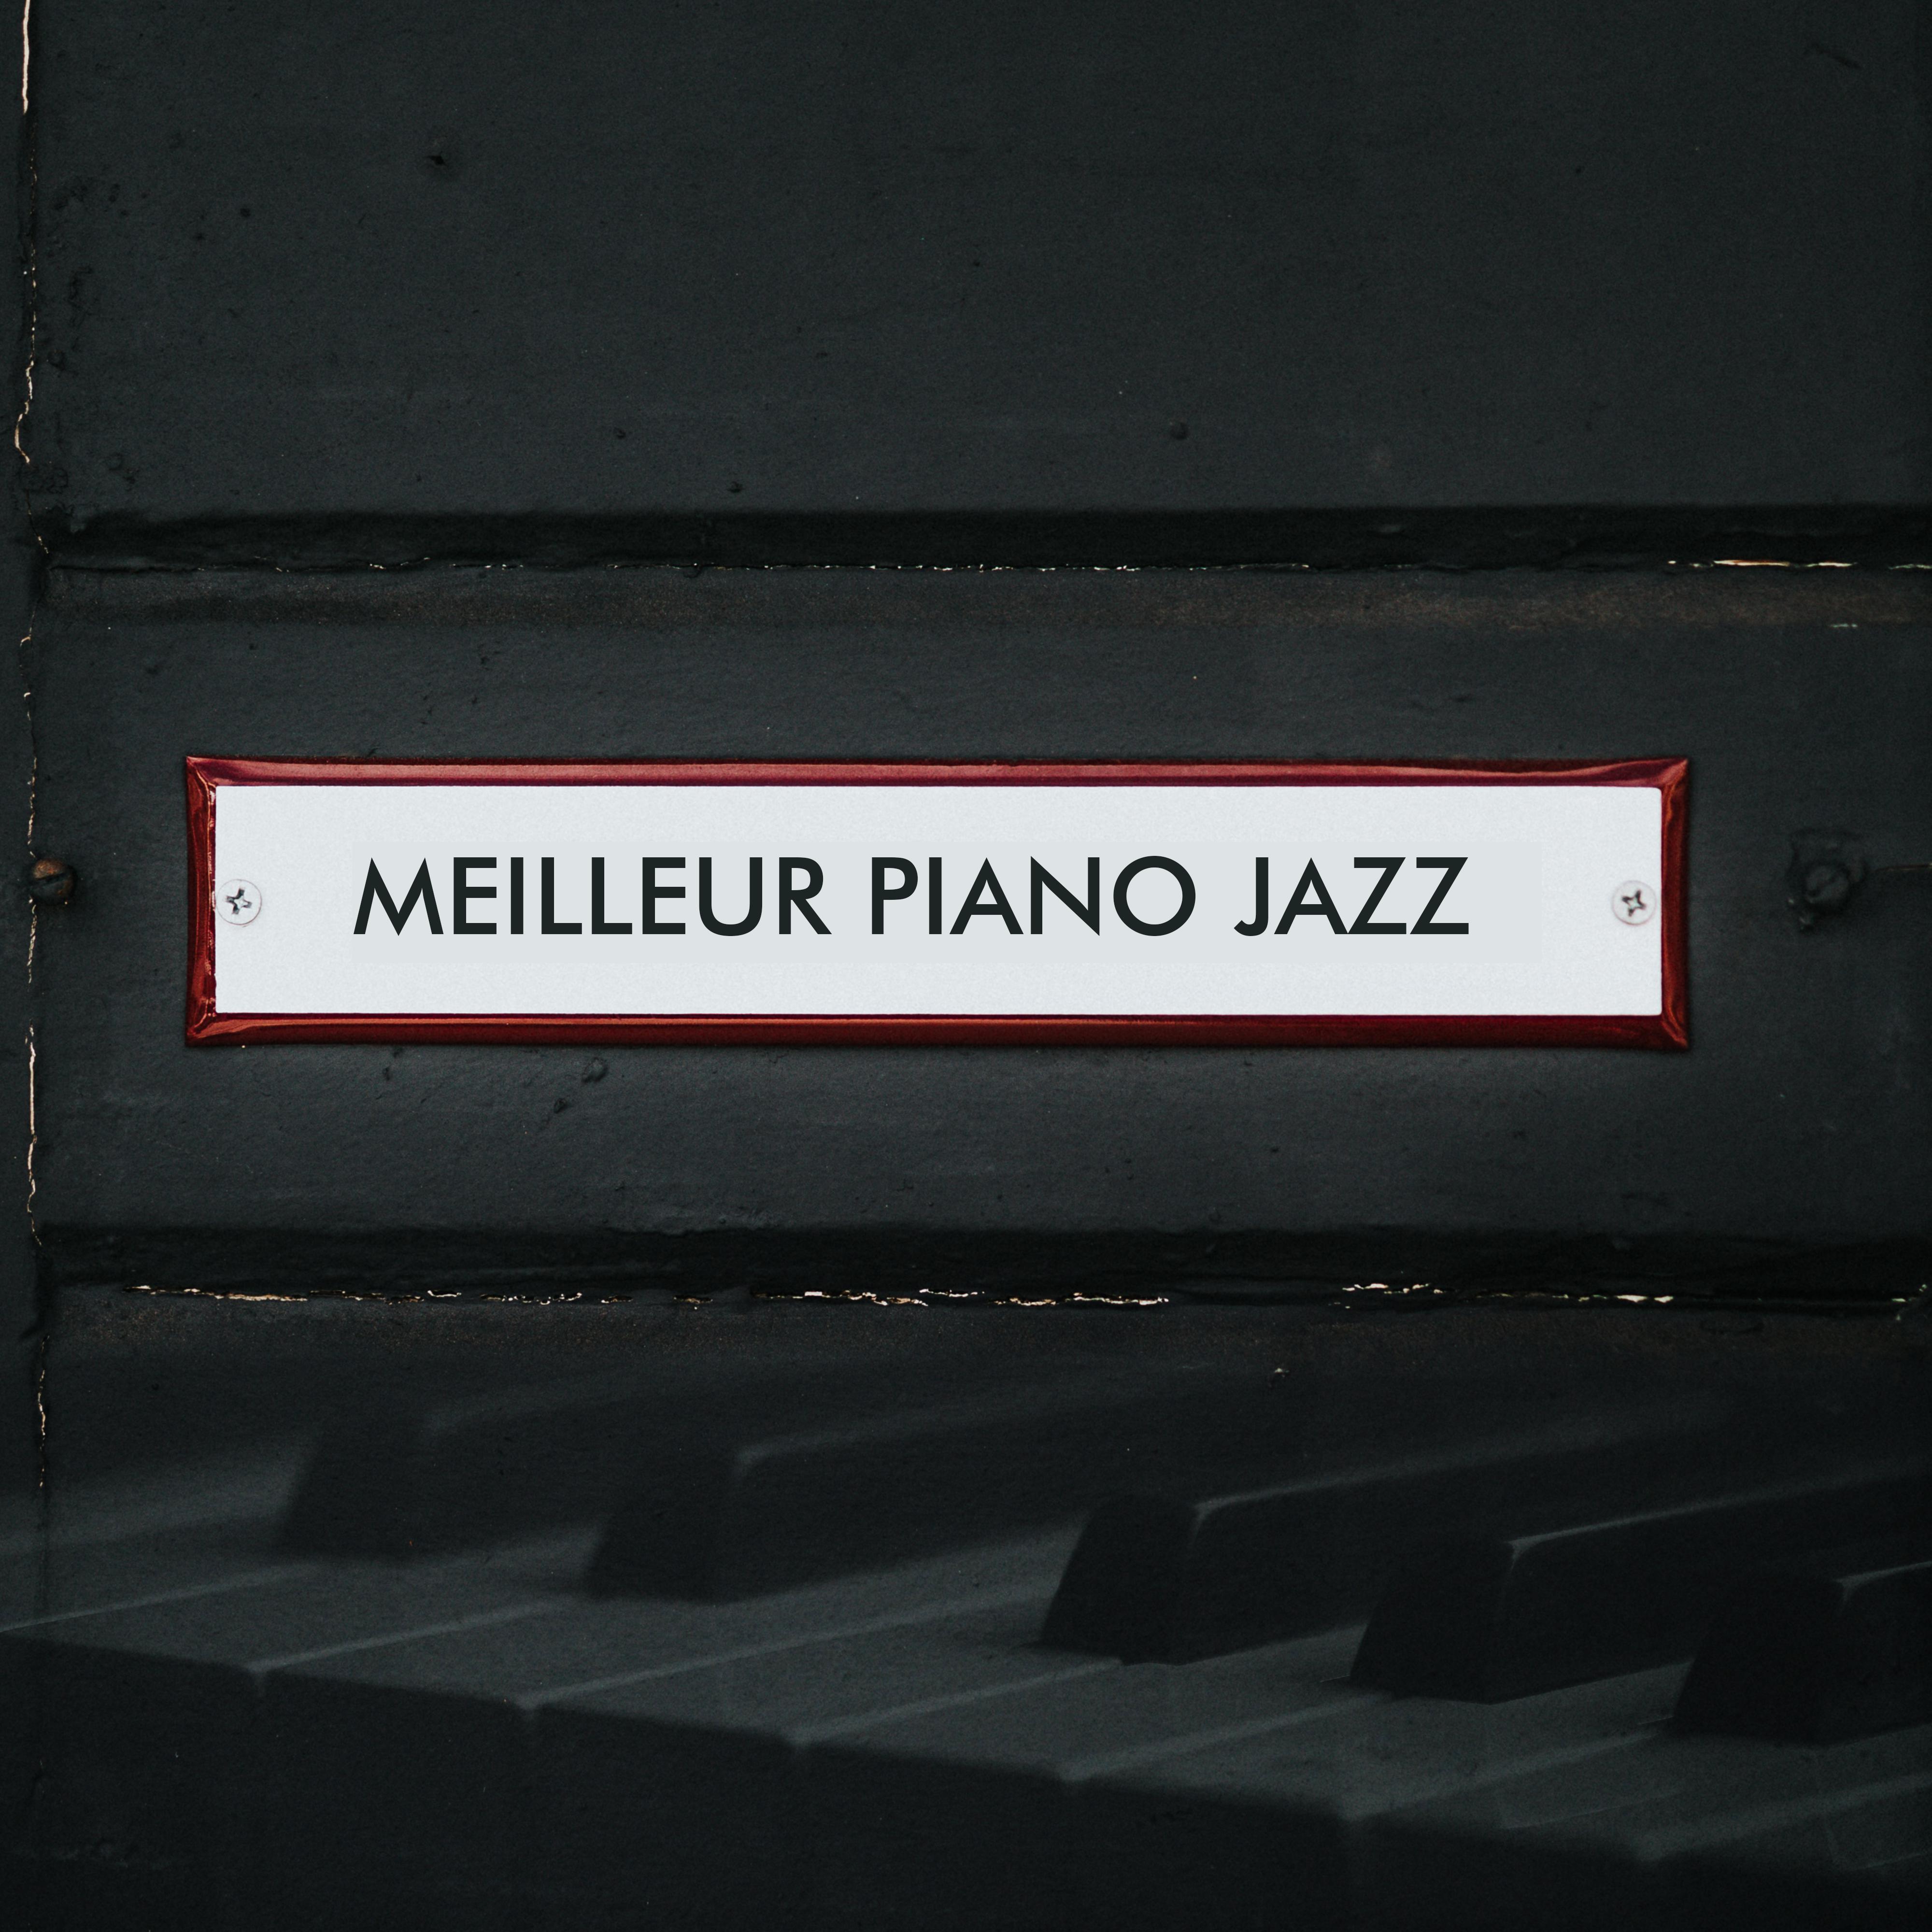 Meilleur piano jazz